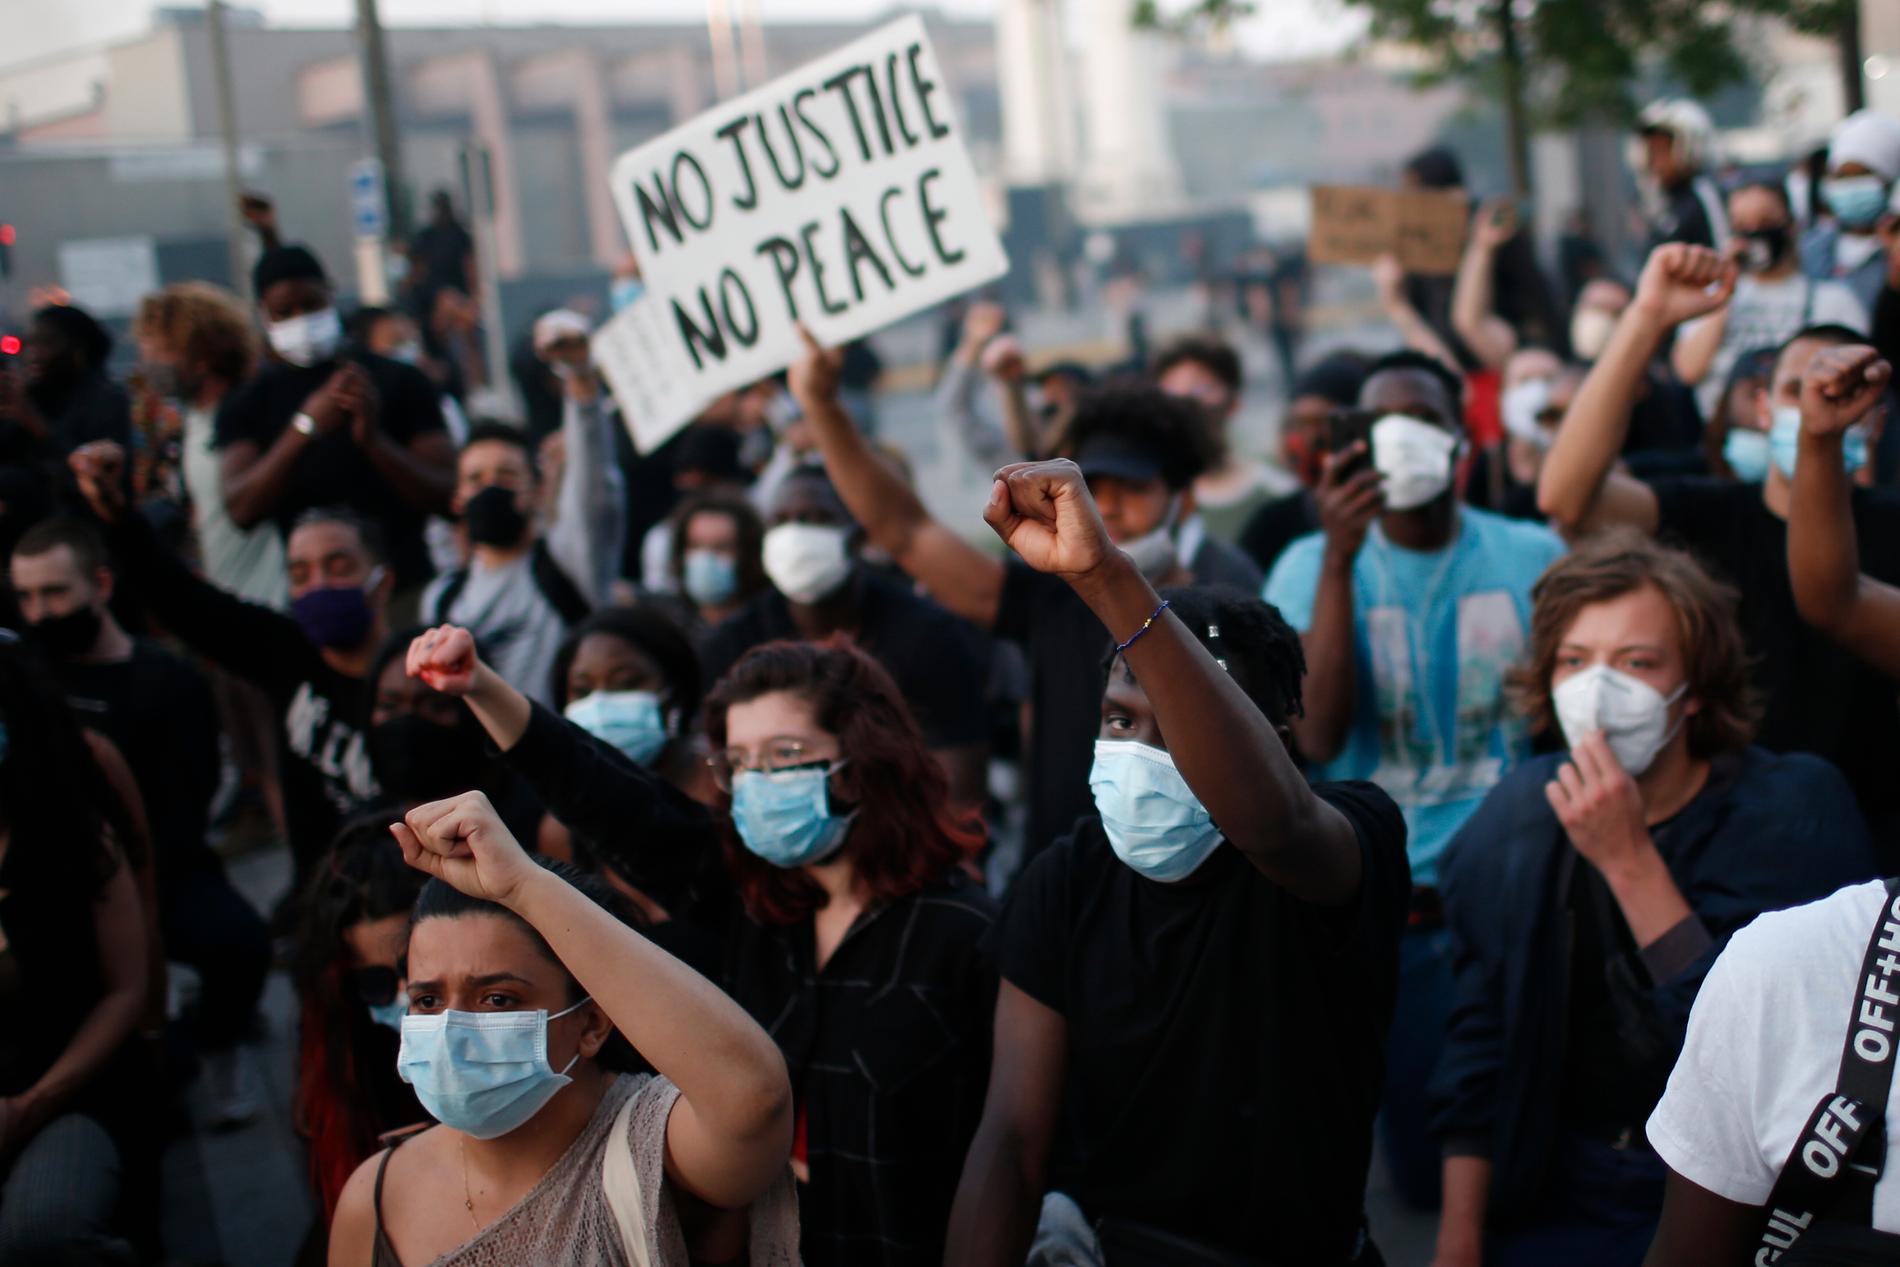 Demonstranter i Paris protesterar mot polisvåld och en svart mans död i samband med ett polisingripande 2016.